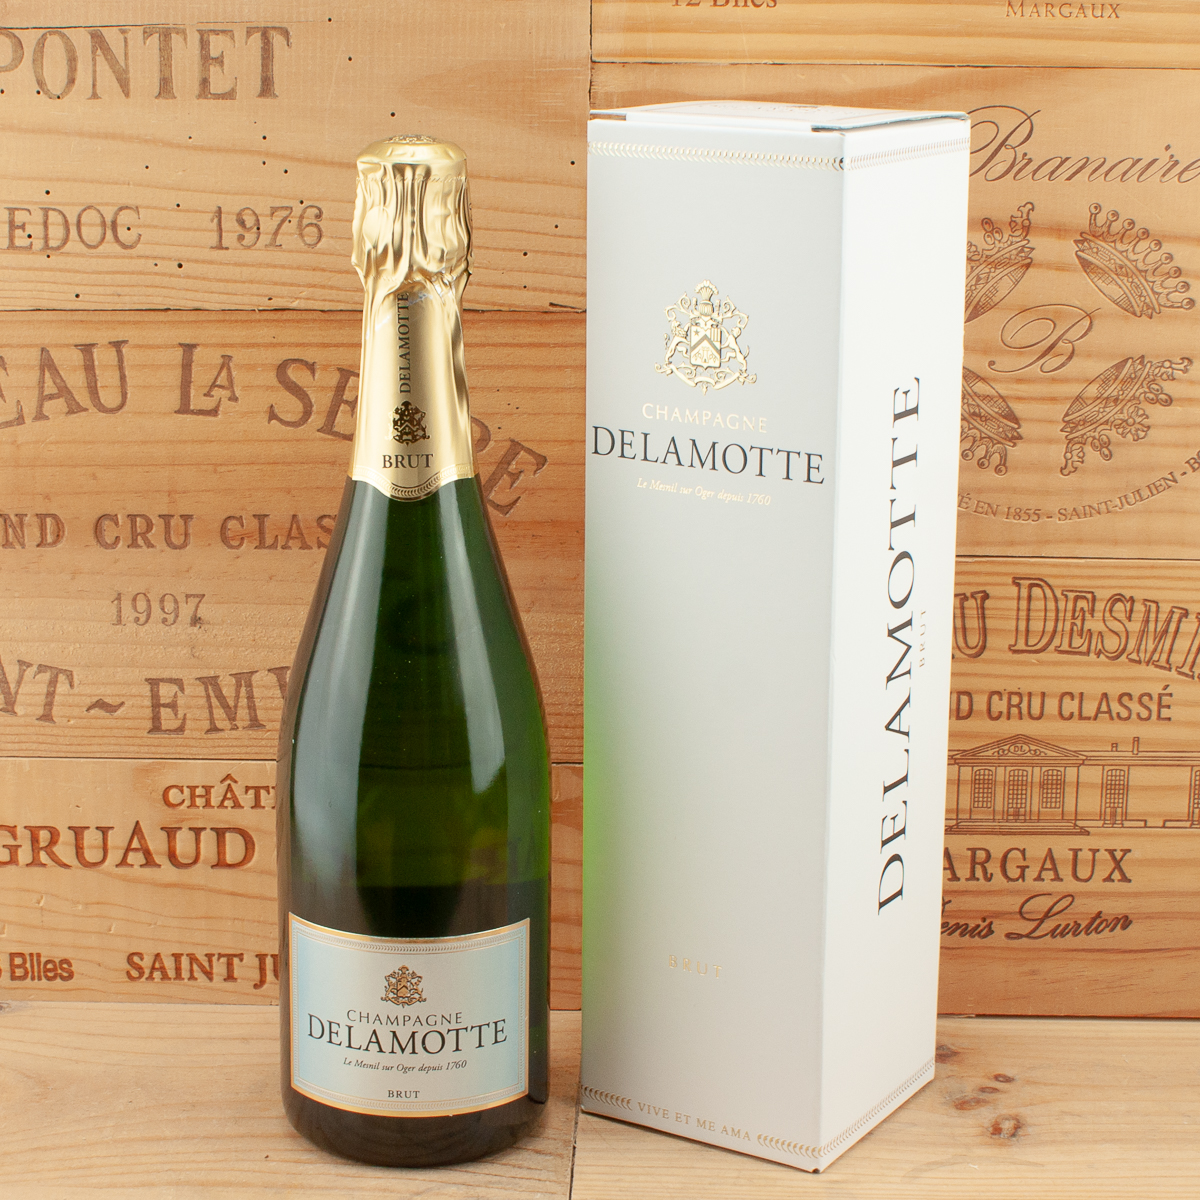 Champagne Delamotte brut